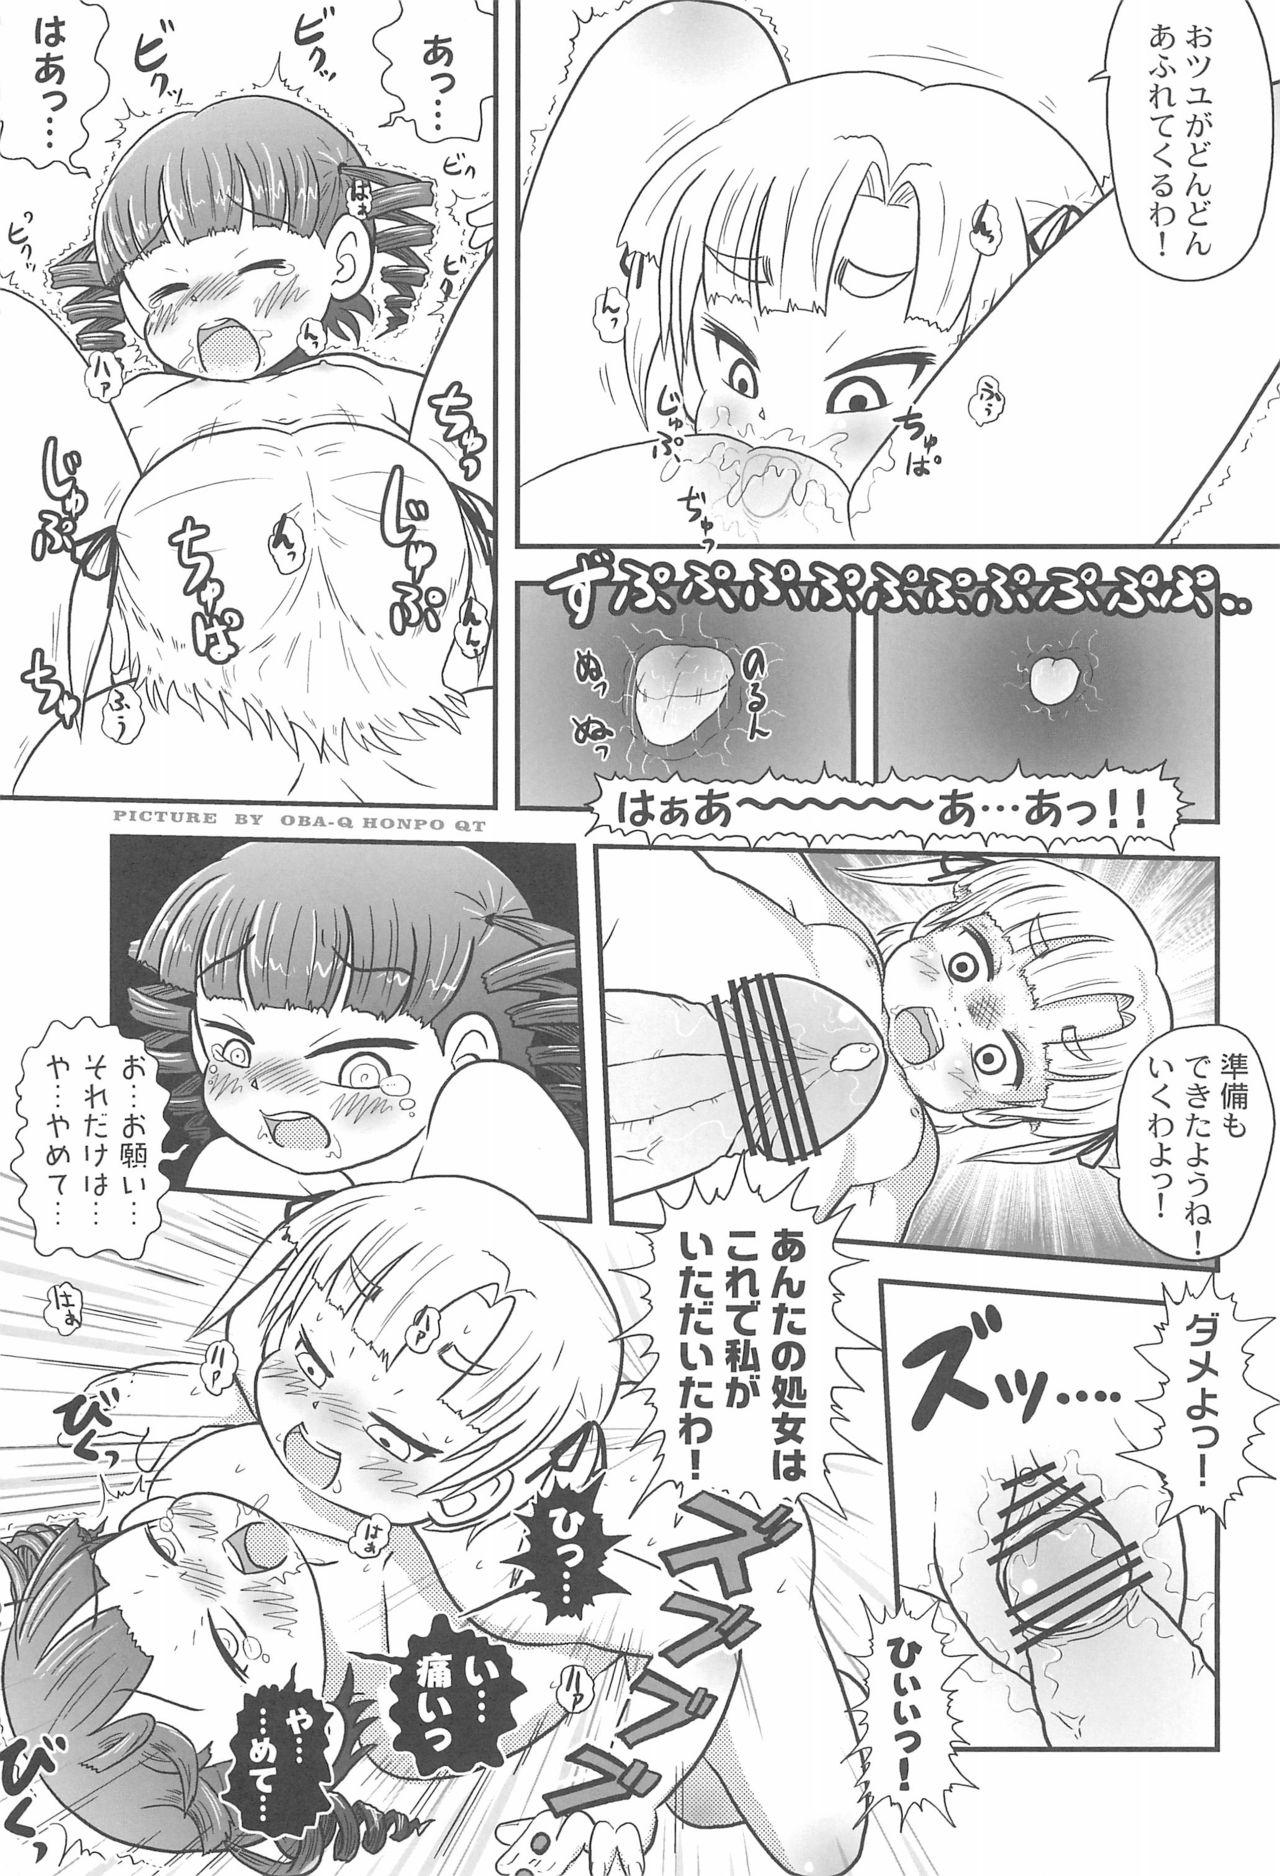 Milfporn Mitsudomoerohon 2 - Mitsudomoe Homosexual - Page 13